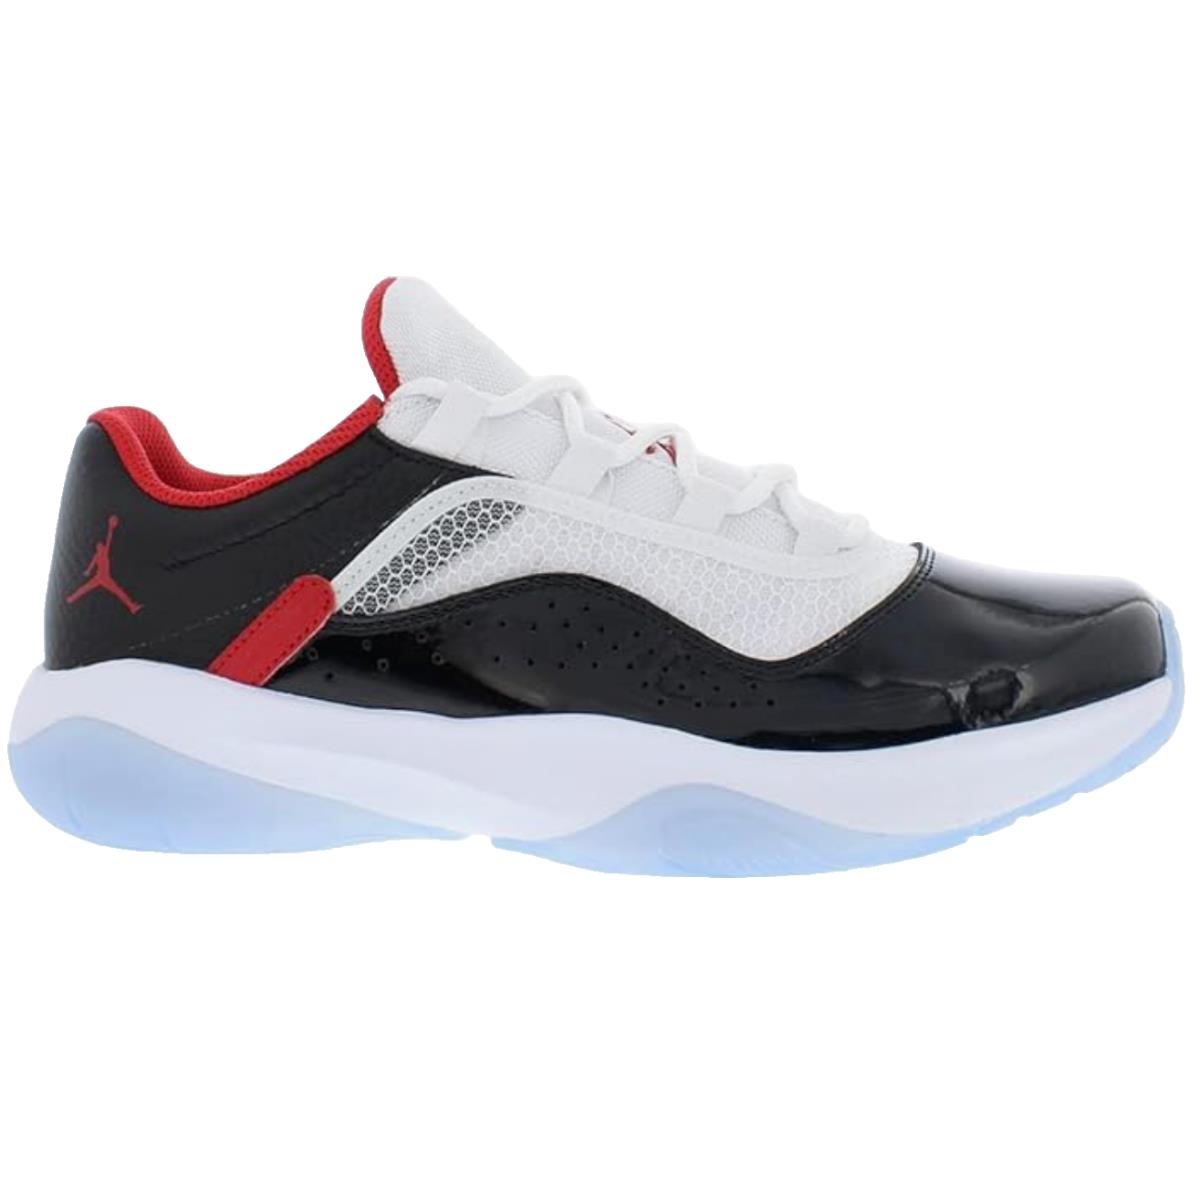 Nike Air Jordan 11 Cmft Low Mens Basketball Trainers Sneakers Shoes 9.5 US